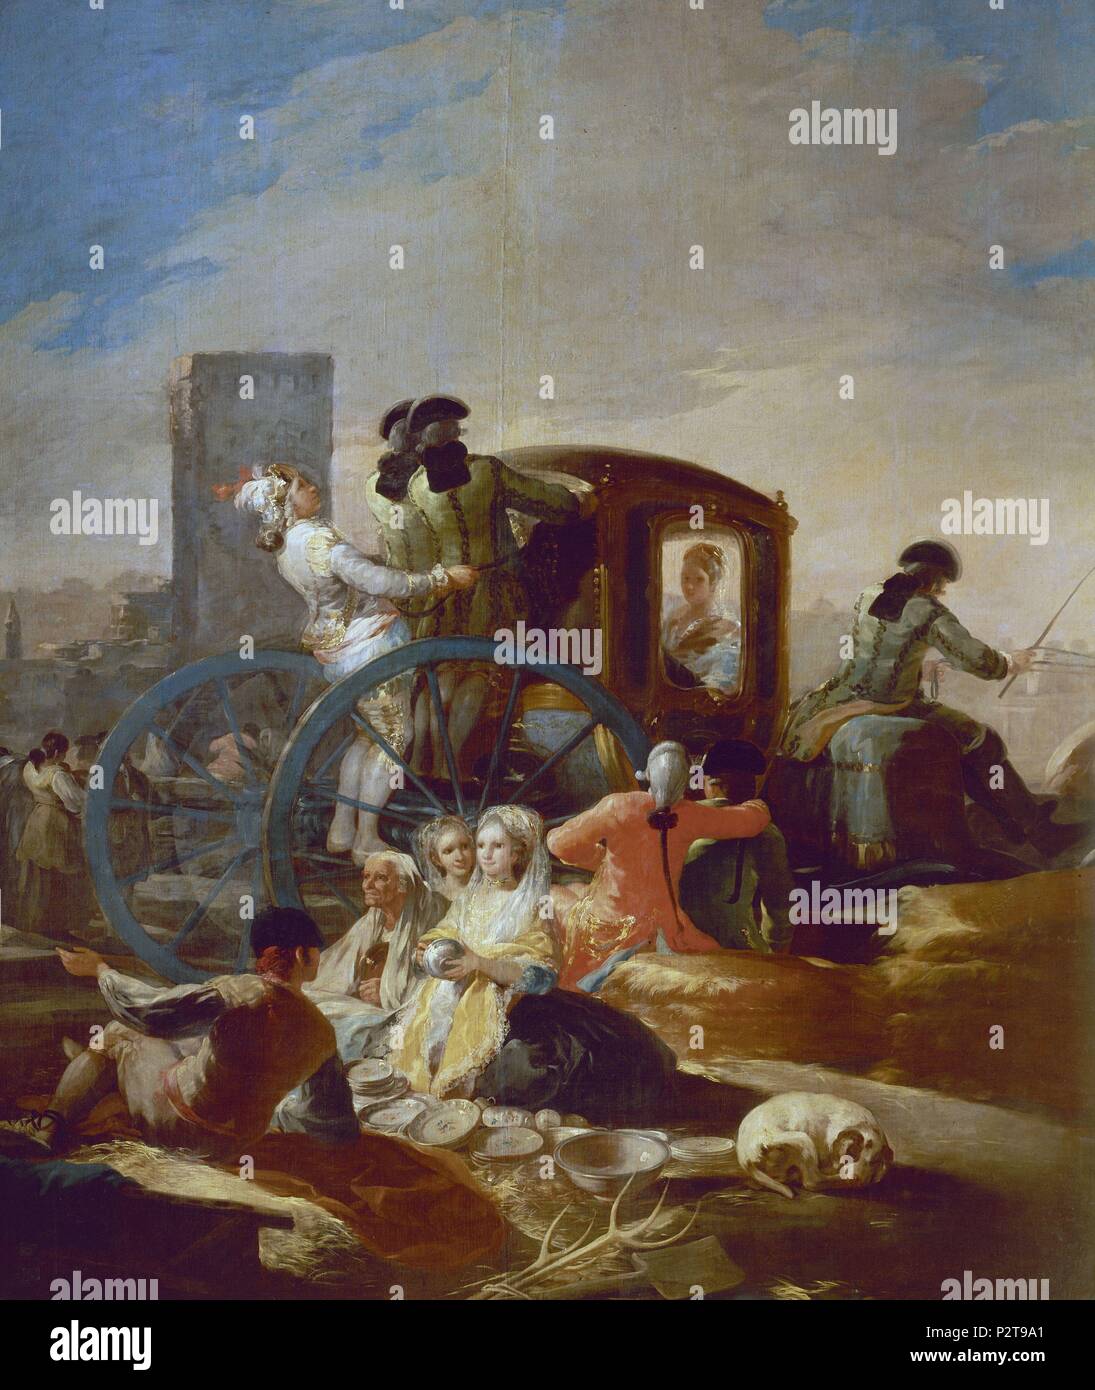 "Le vendeur de poterie', 1778, École d'espagnol, huile sur toile, 259 cm x 220 cm, P00780. Auteur : Francisco de Goya (1746-1828). Emplacement : Museo del Prado-PINTURA, MADRID, ESPAGNE. Banque D'Images